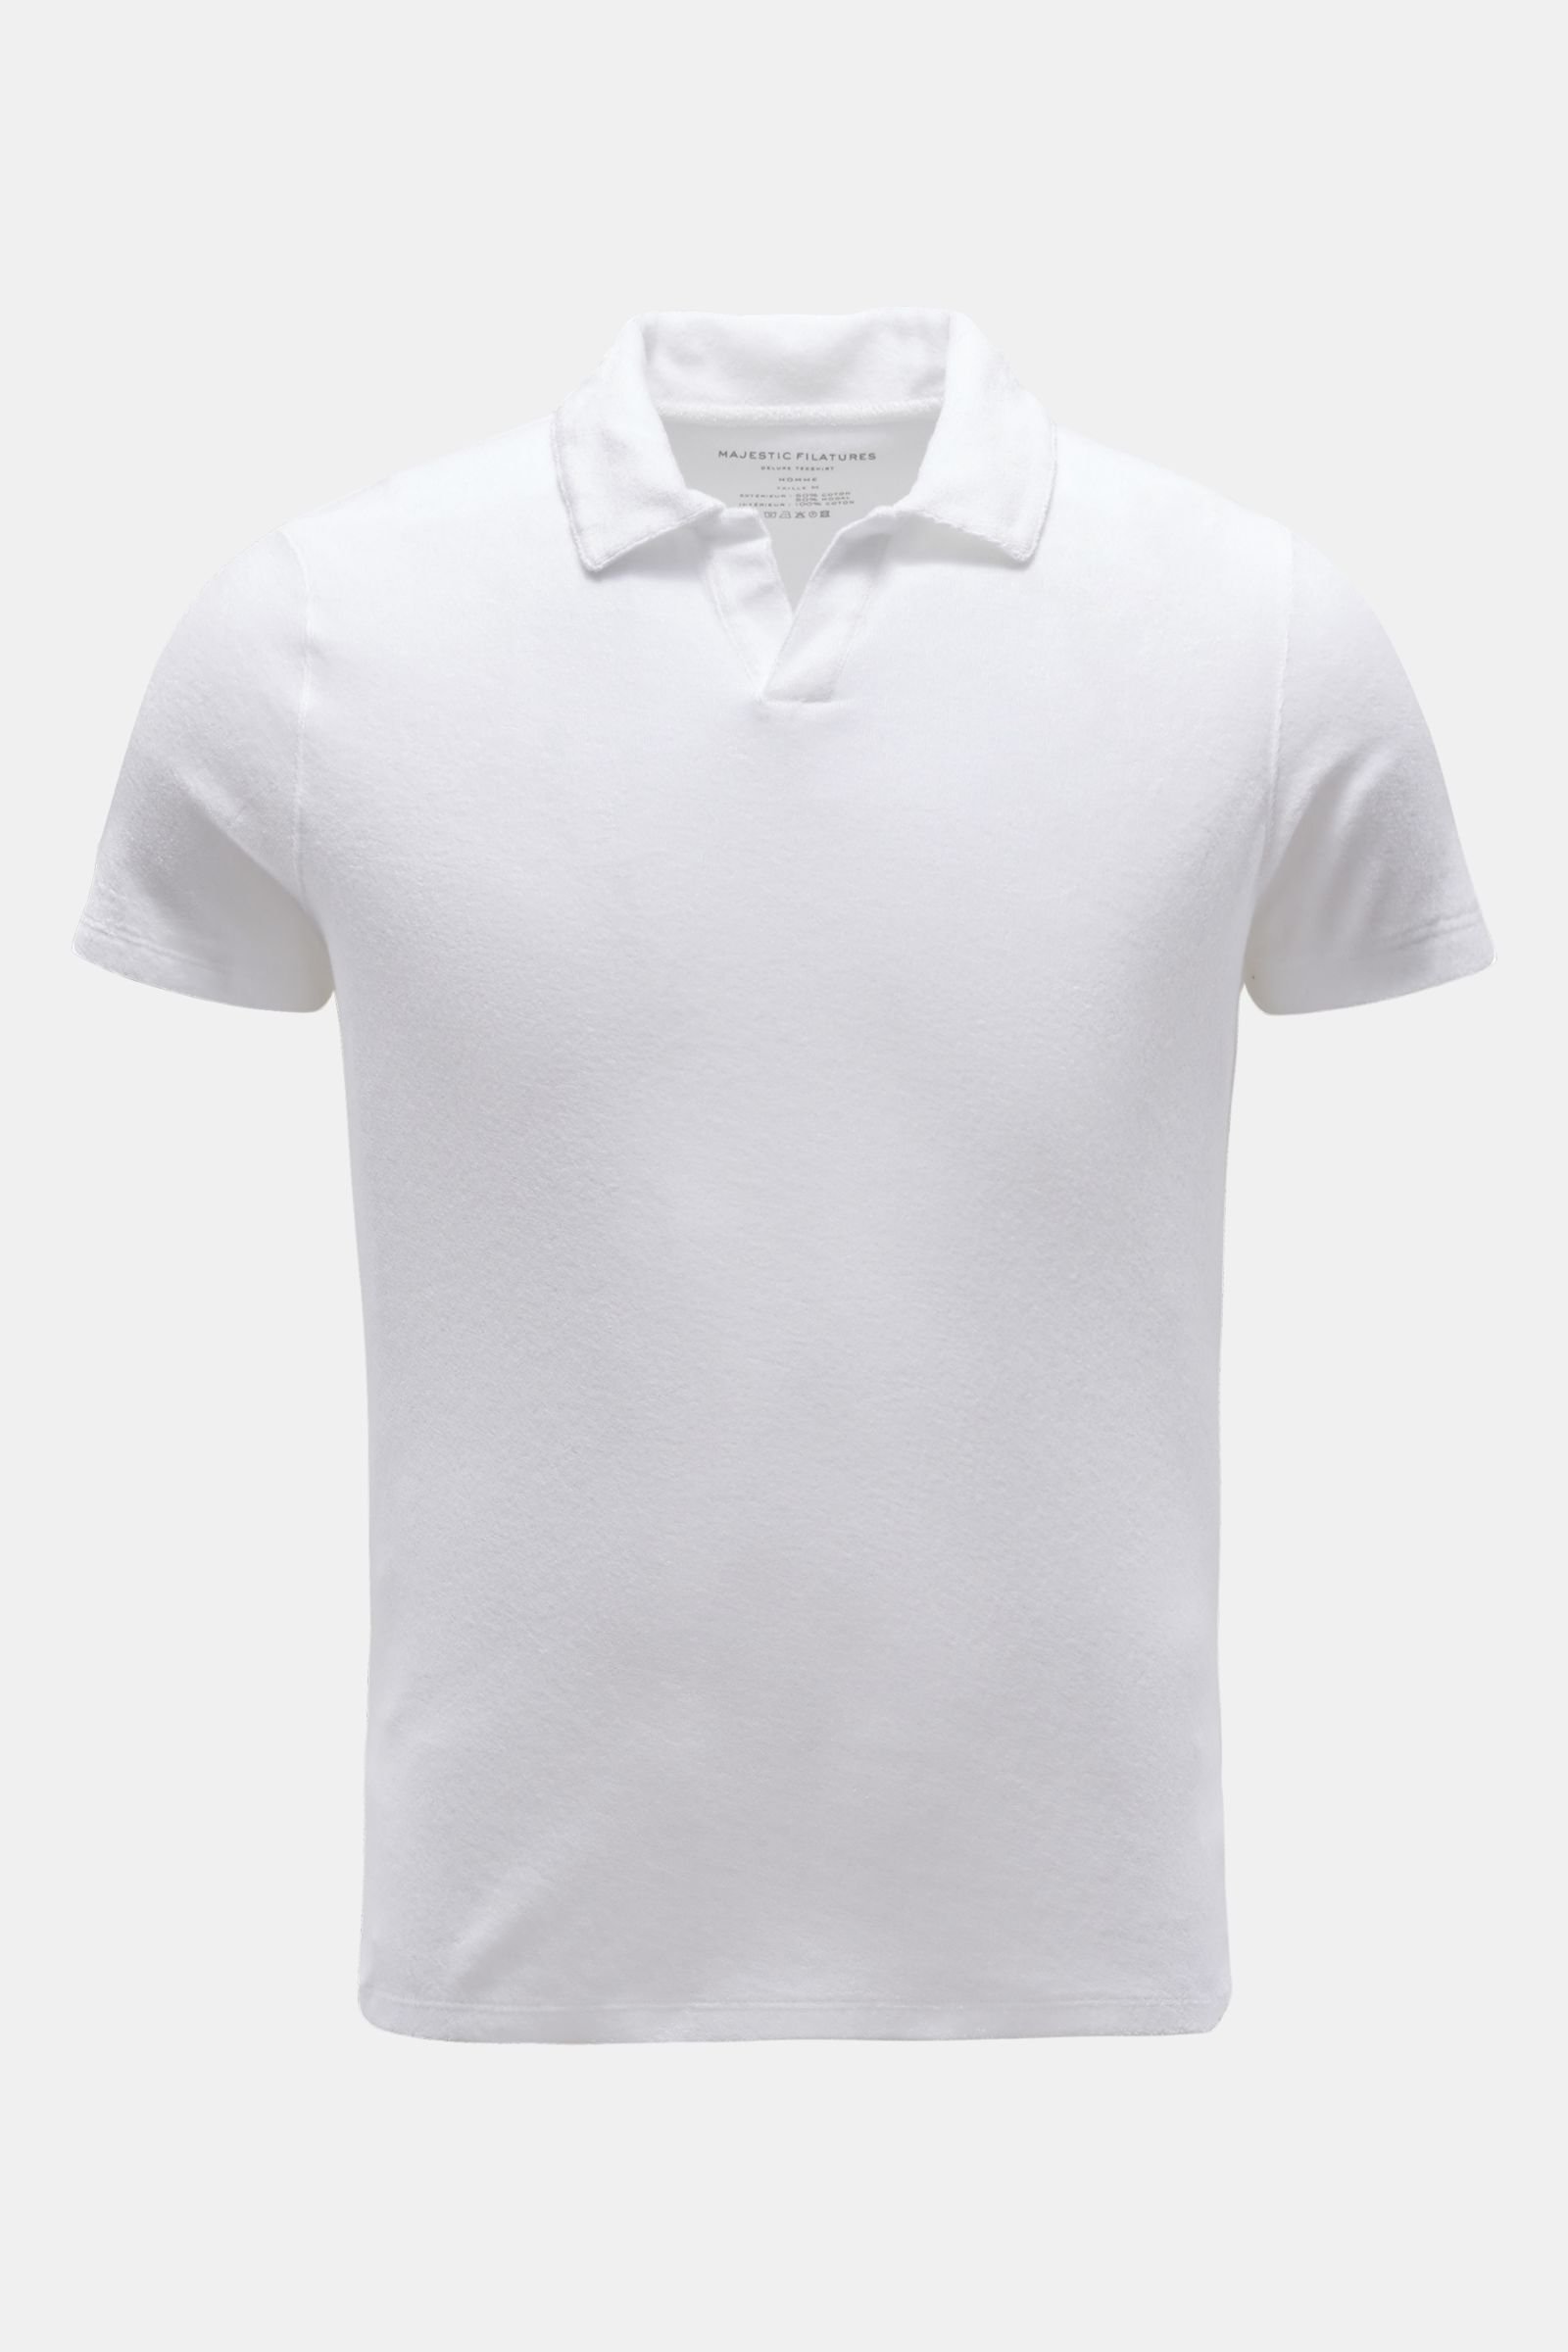 Terry polo shirt white